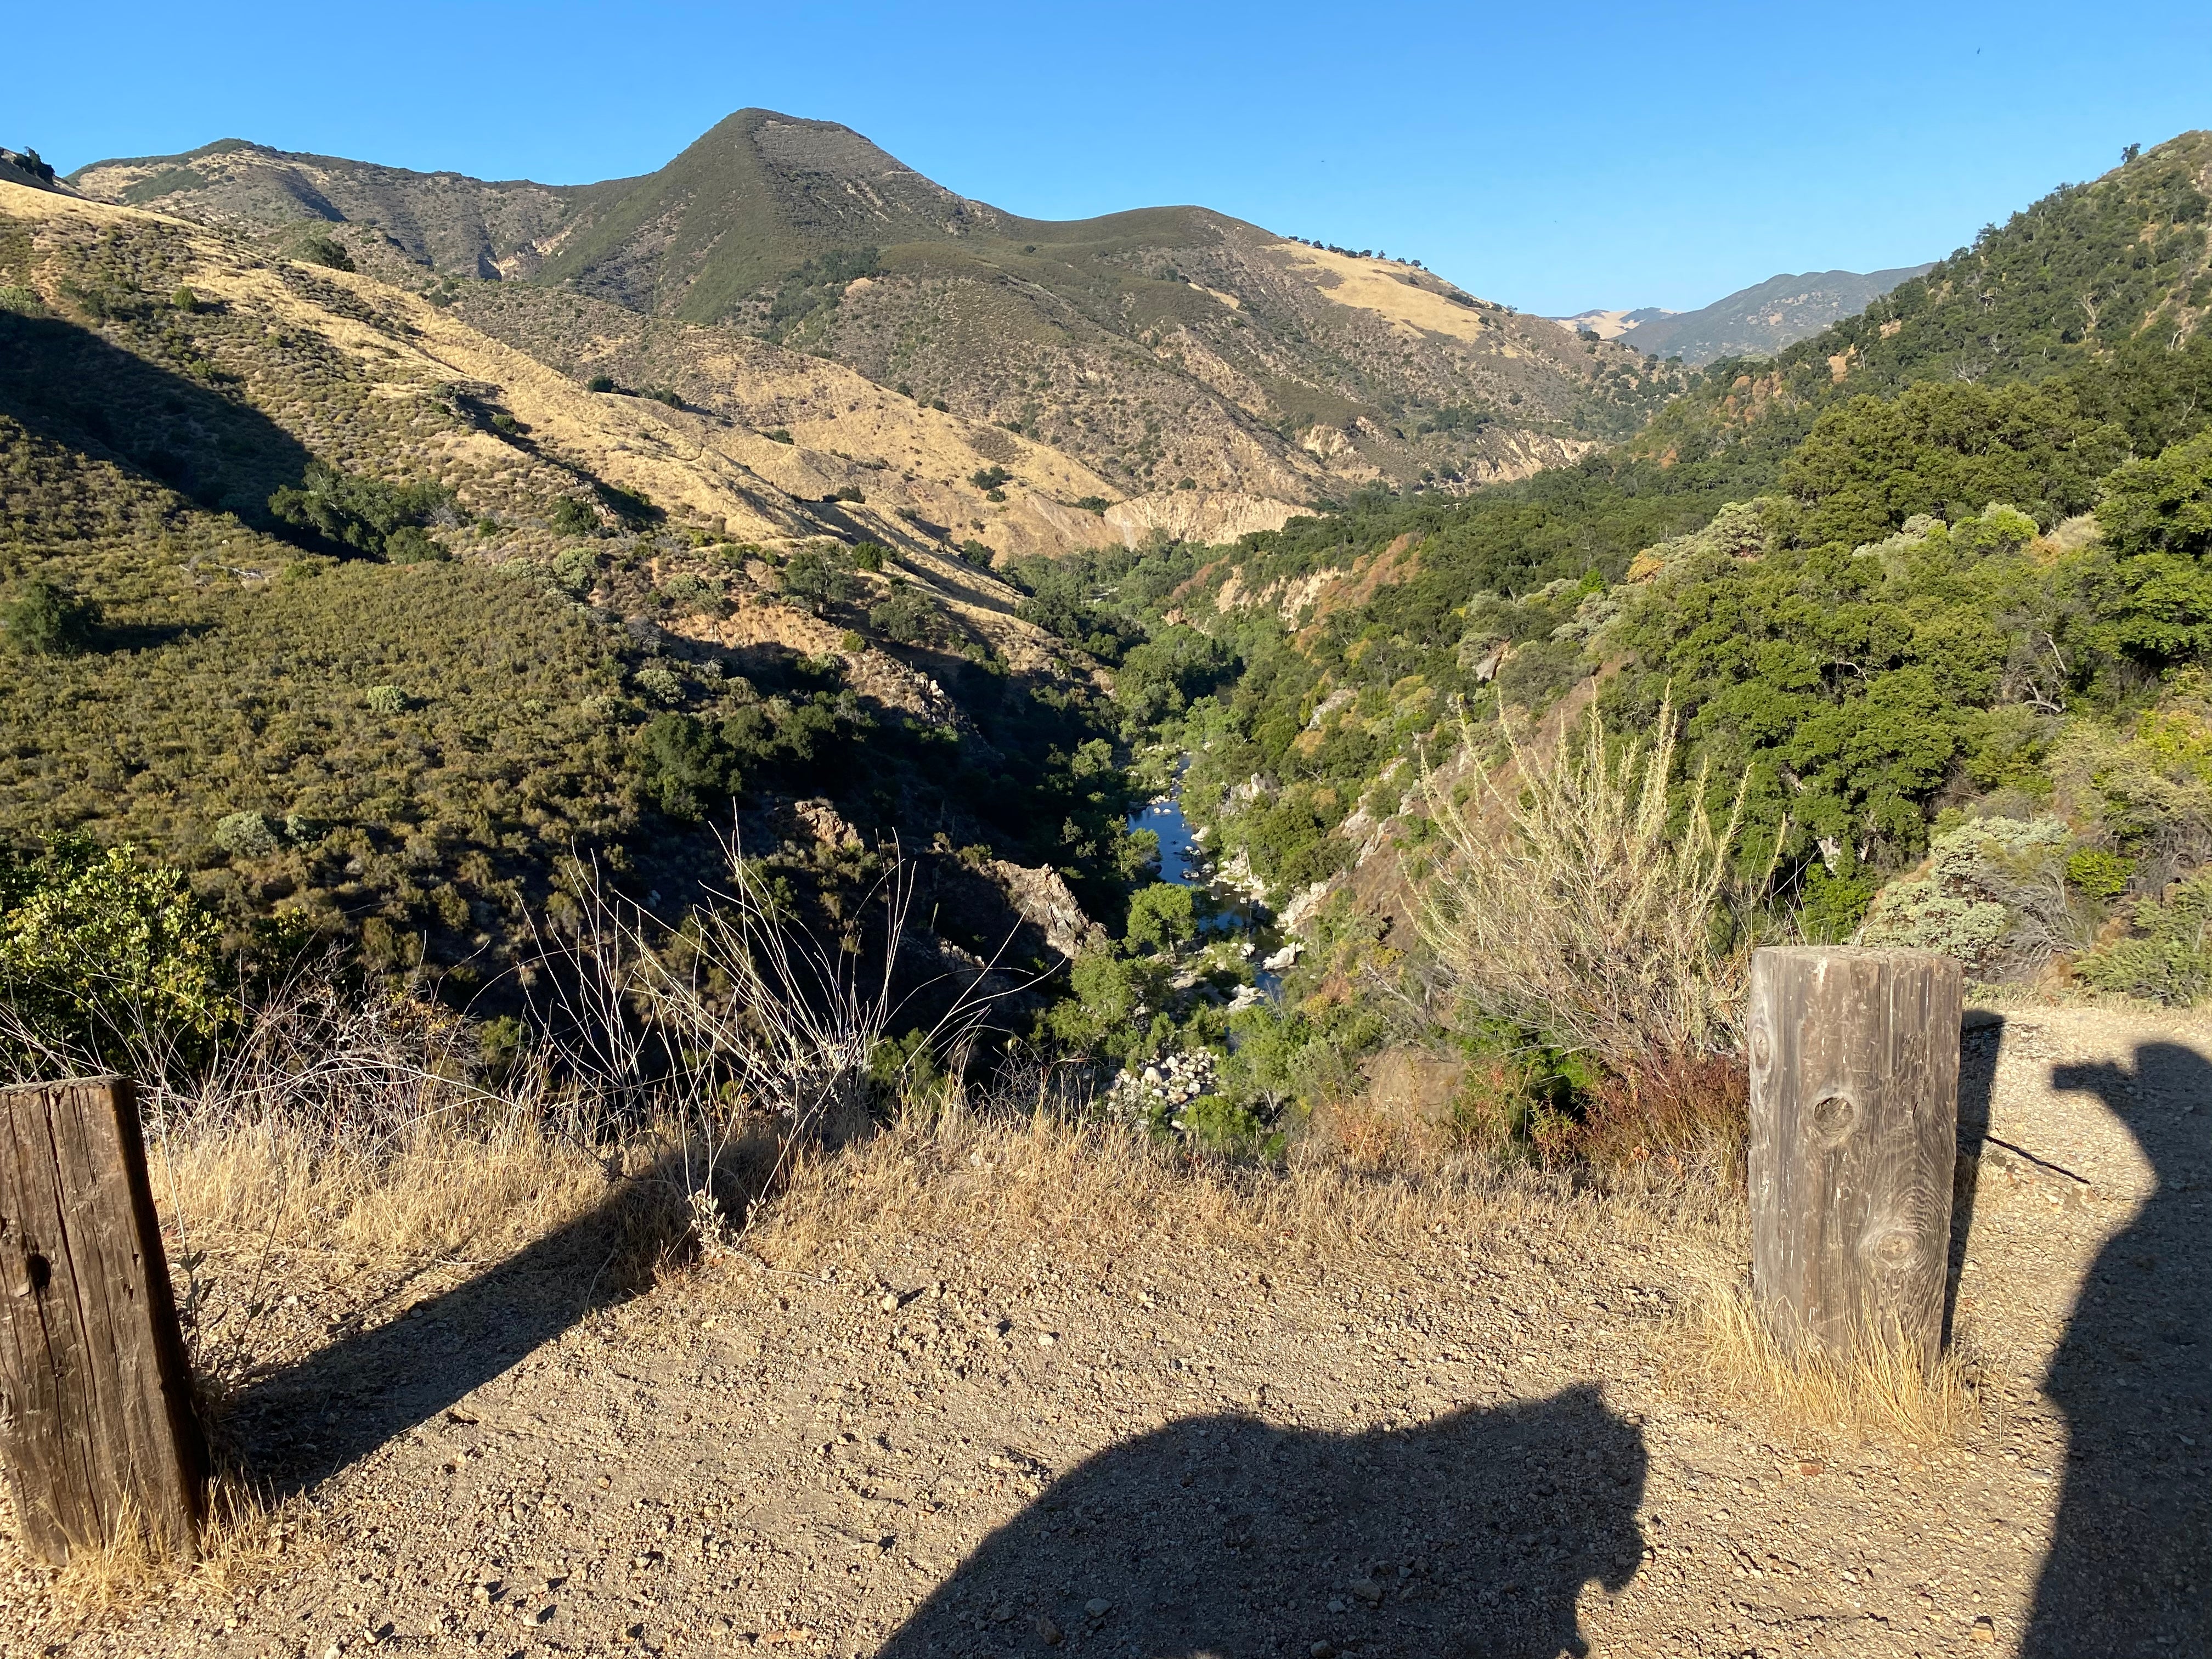 Arroyo seco river - trail view.